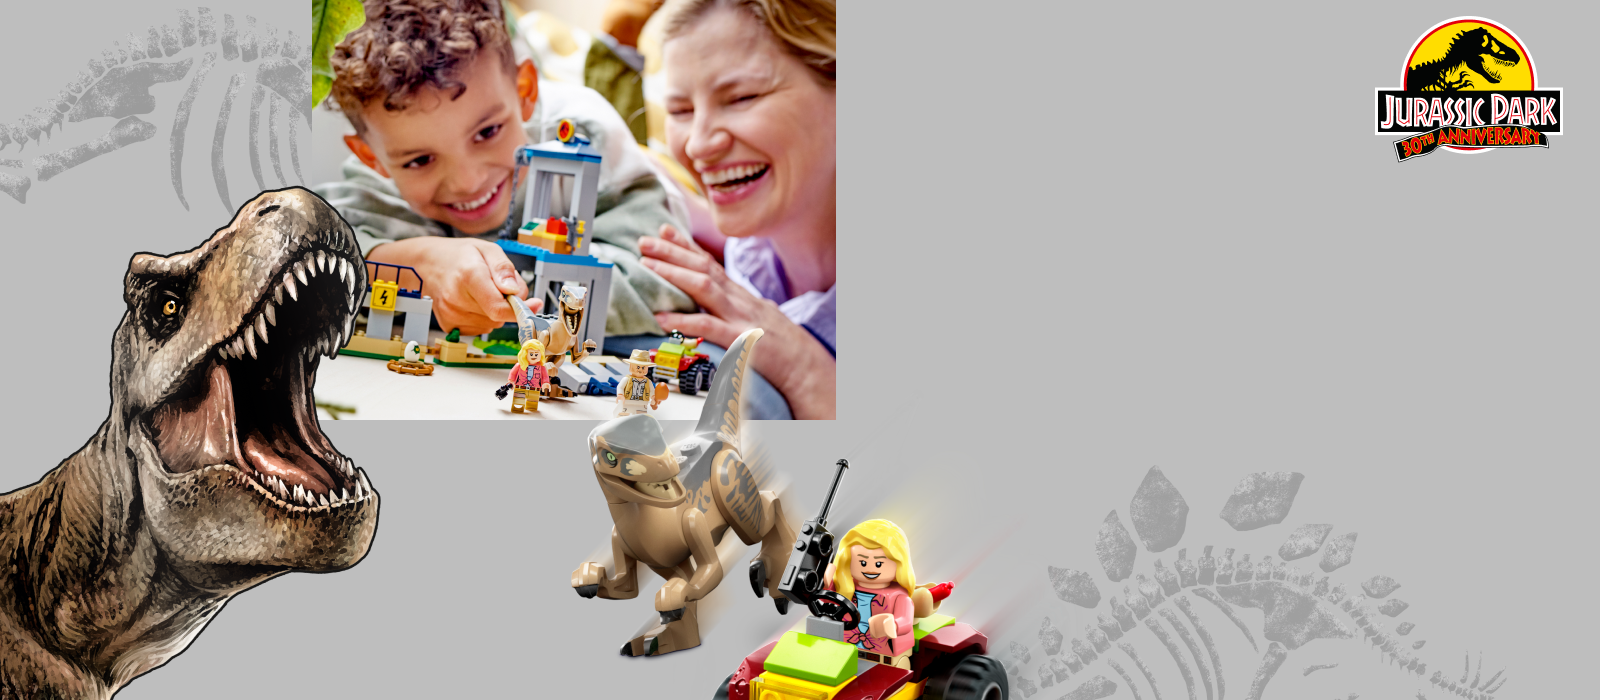 Lego Jurassic World Le Centre De Sauvetage Des Bébés Dinosaures